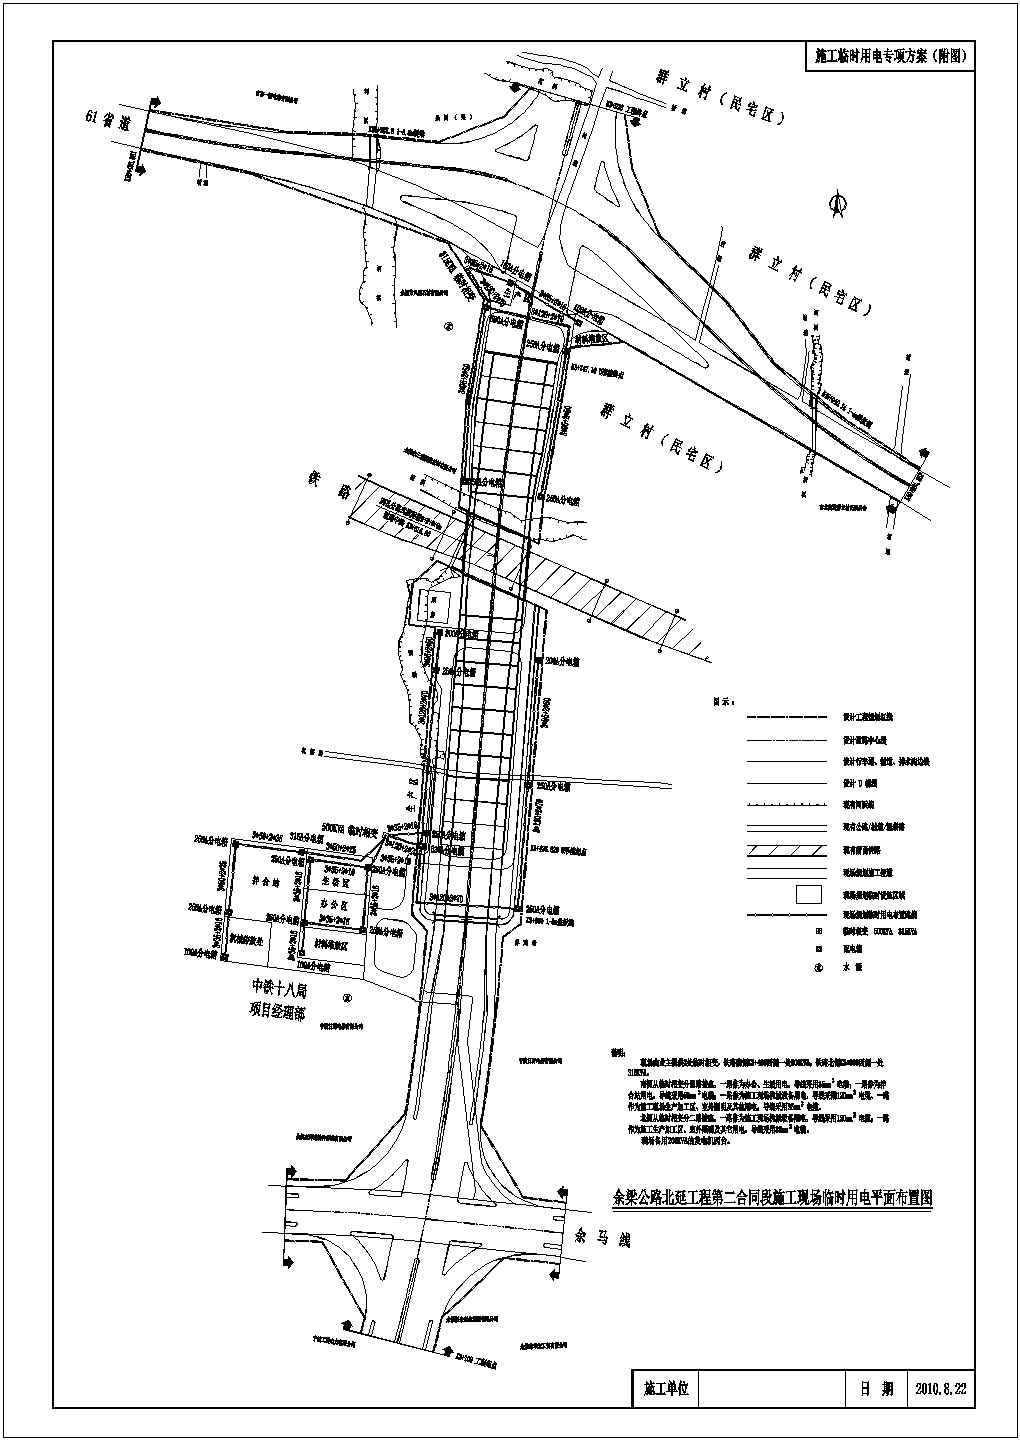 余梁公路北延工程某合同段施工临时用电专项方案